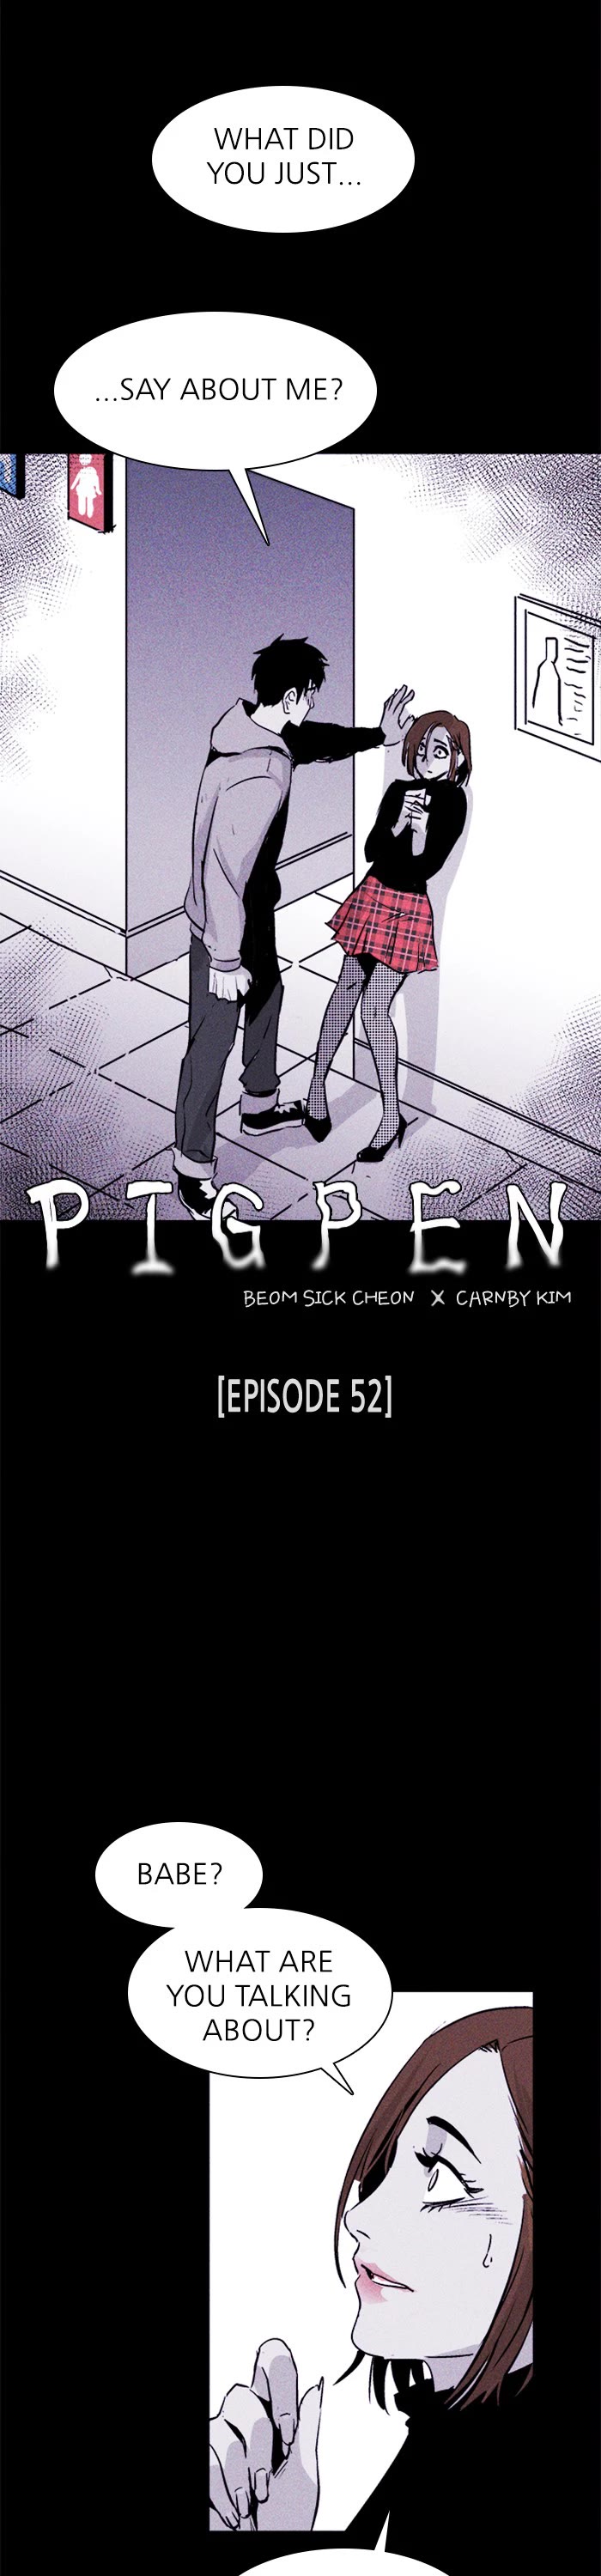 Pigpen - Page 2